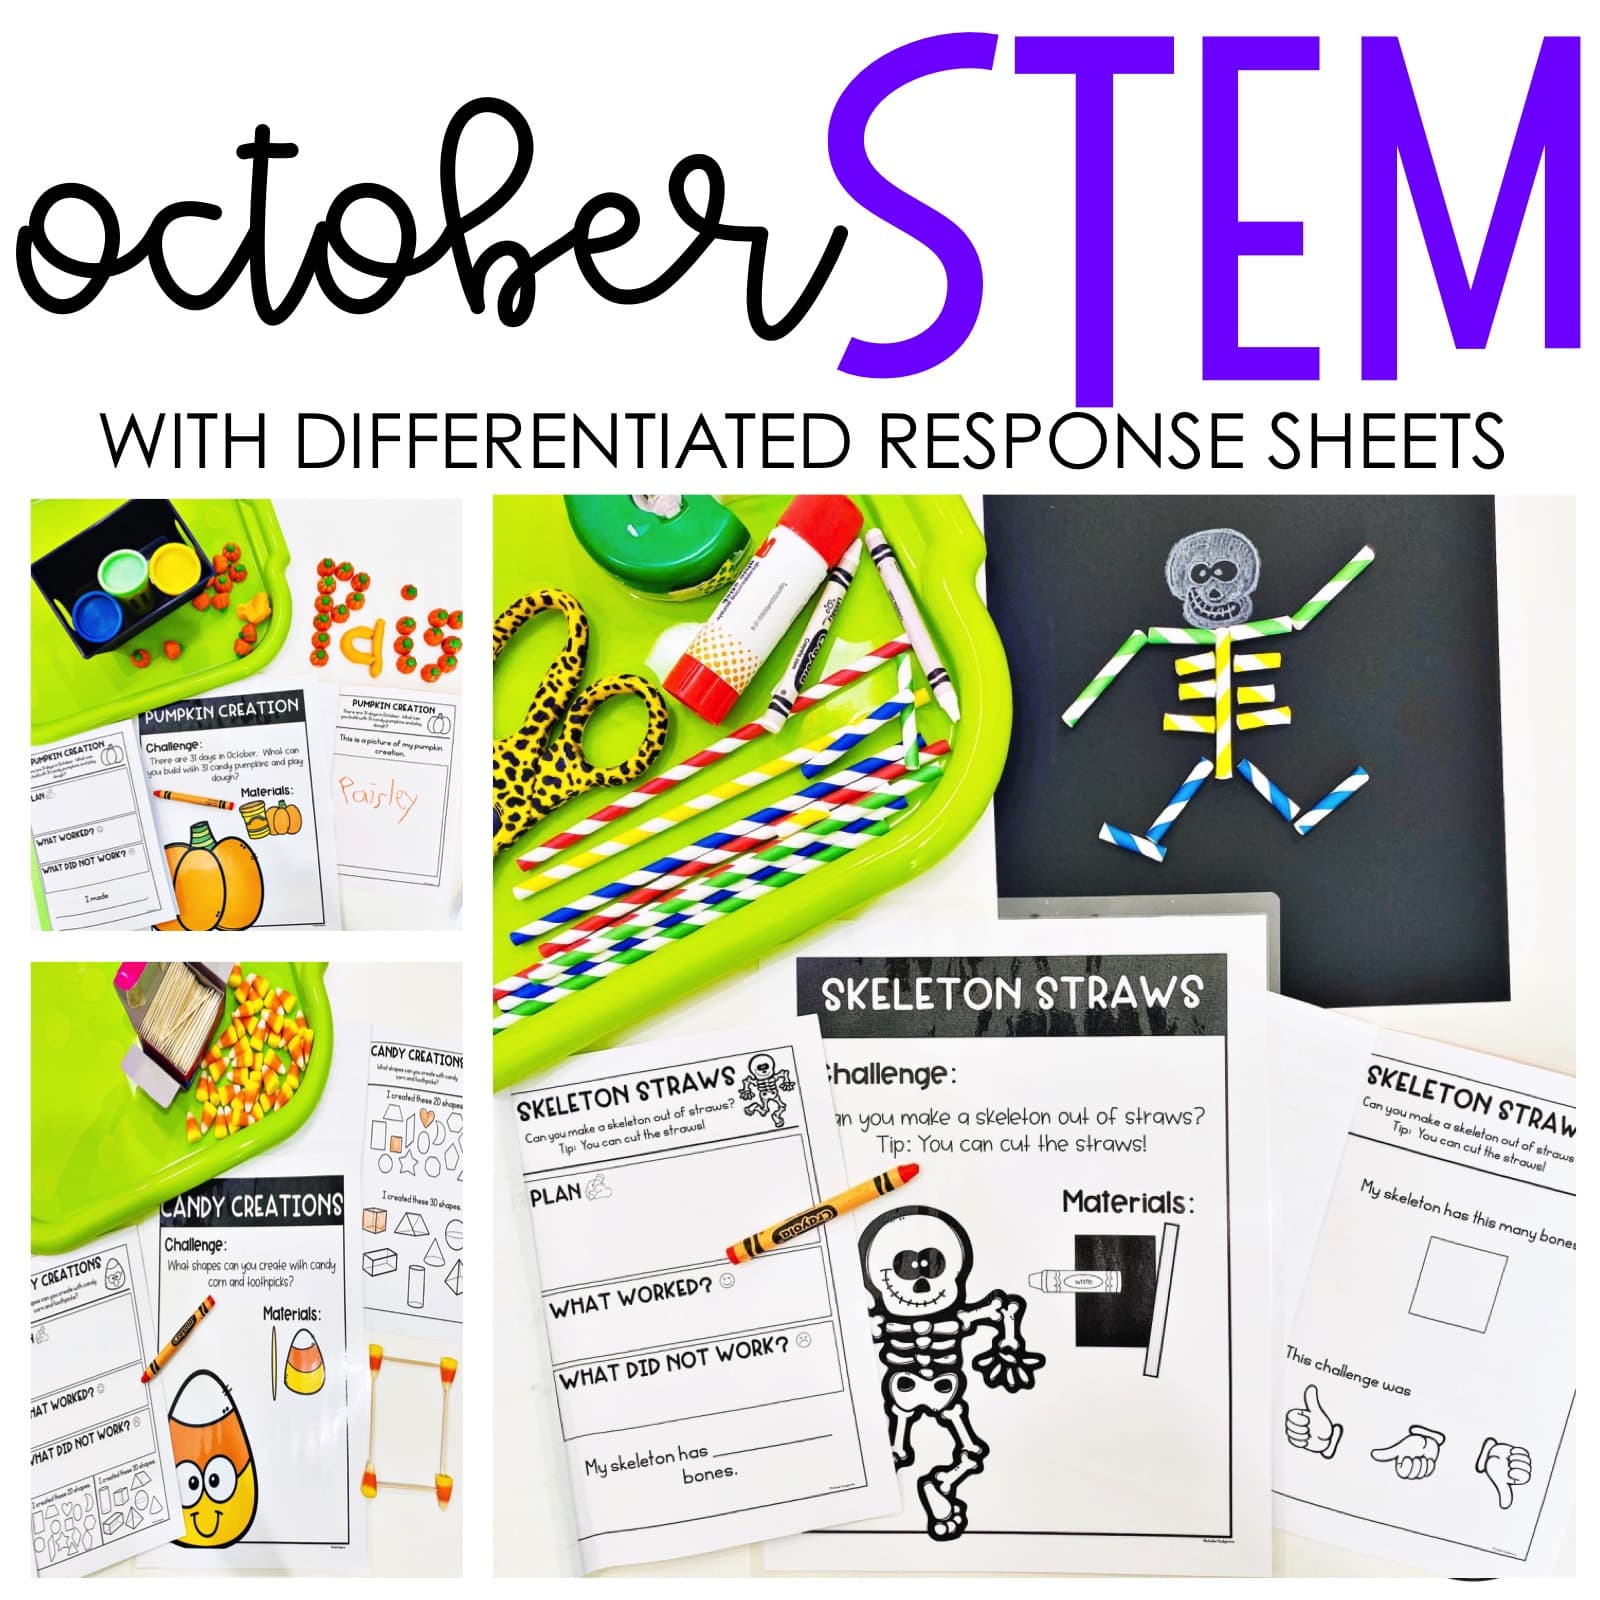 October Halloween STEM Activities